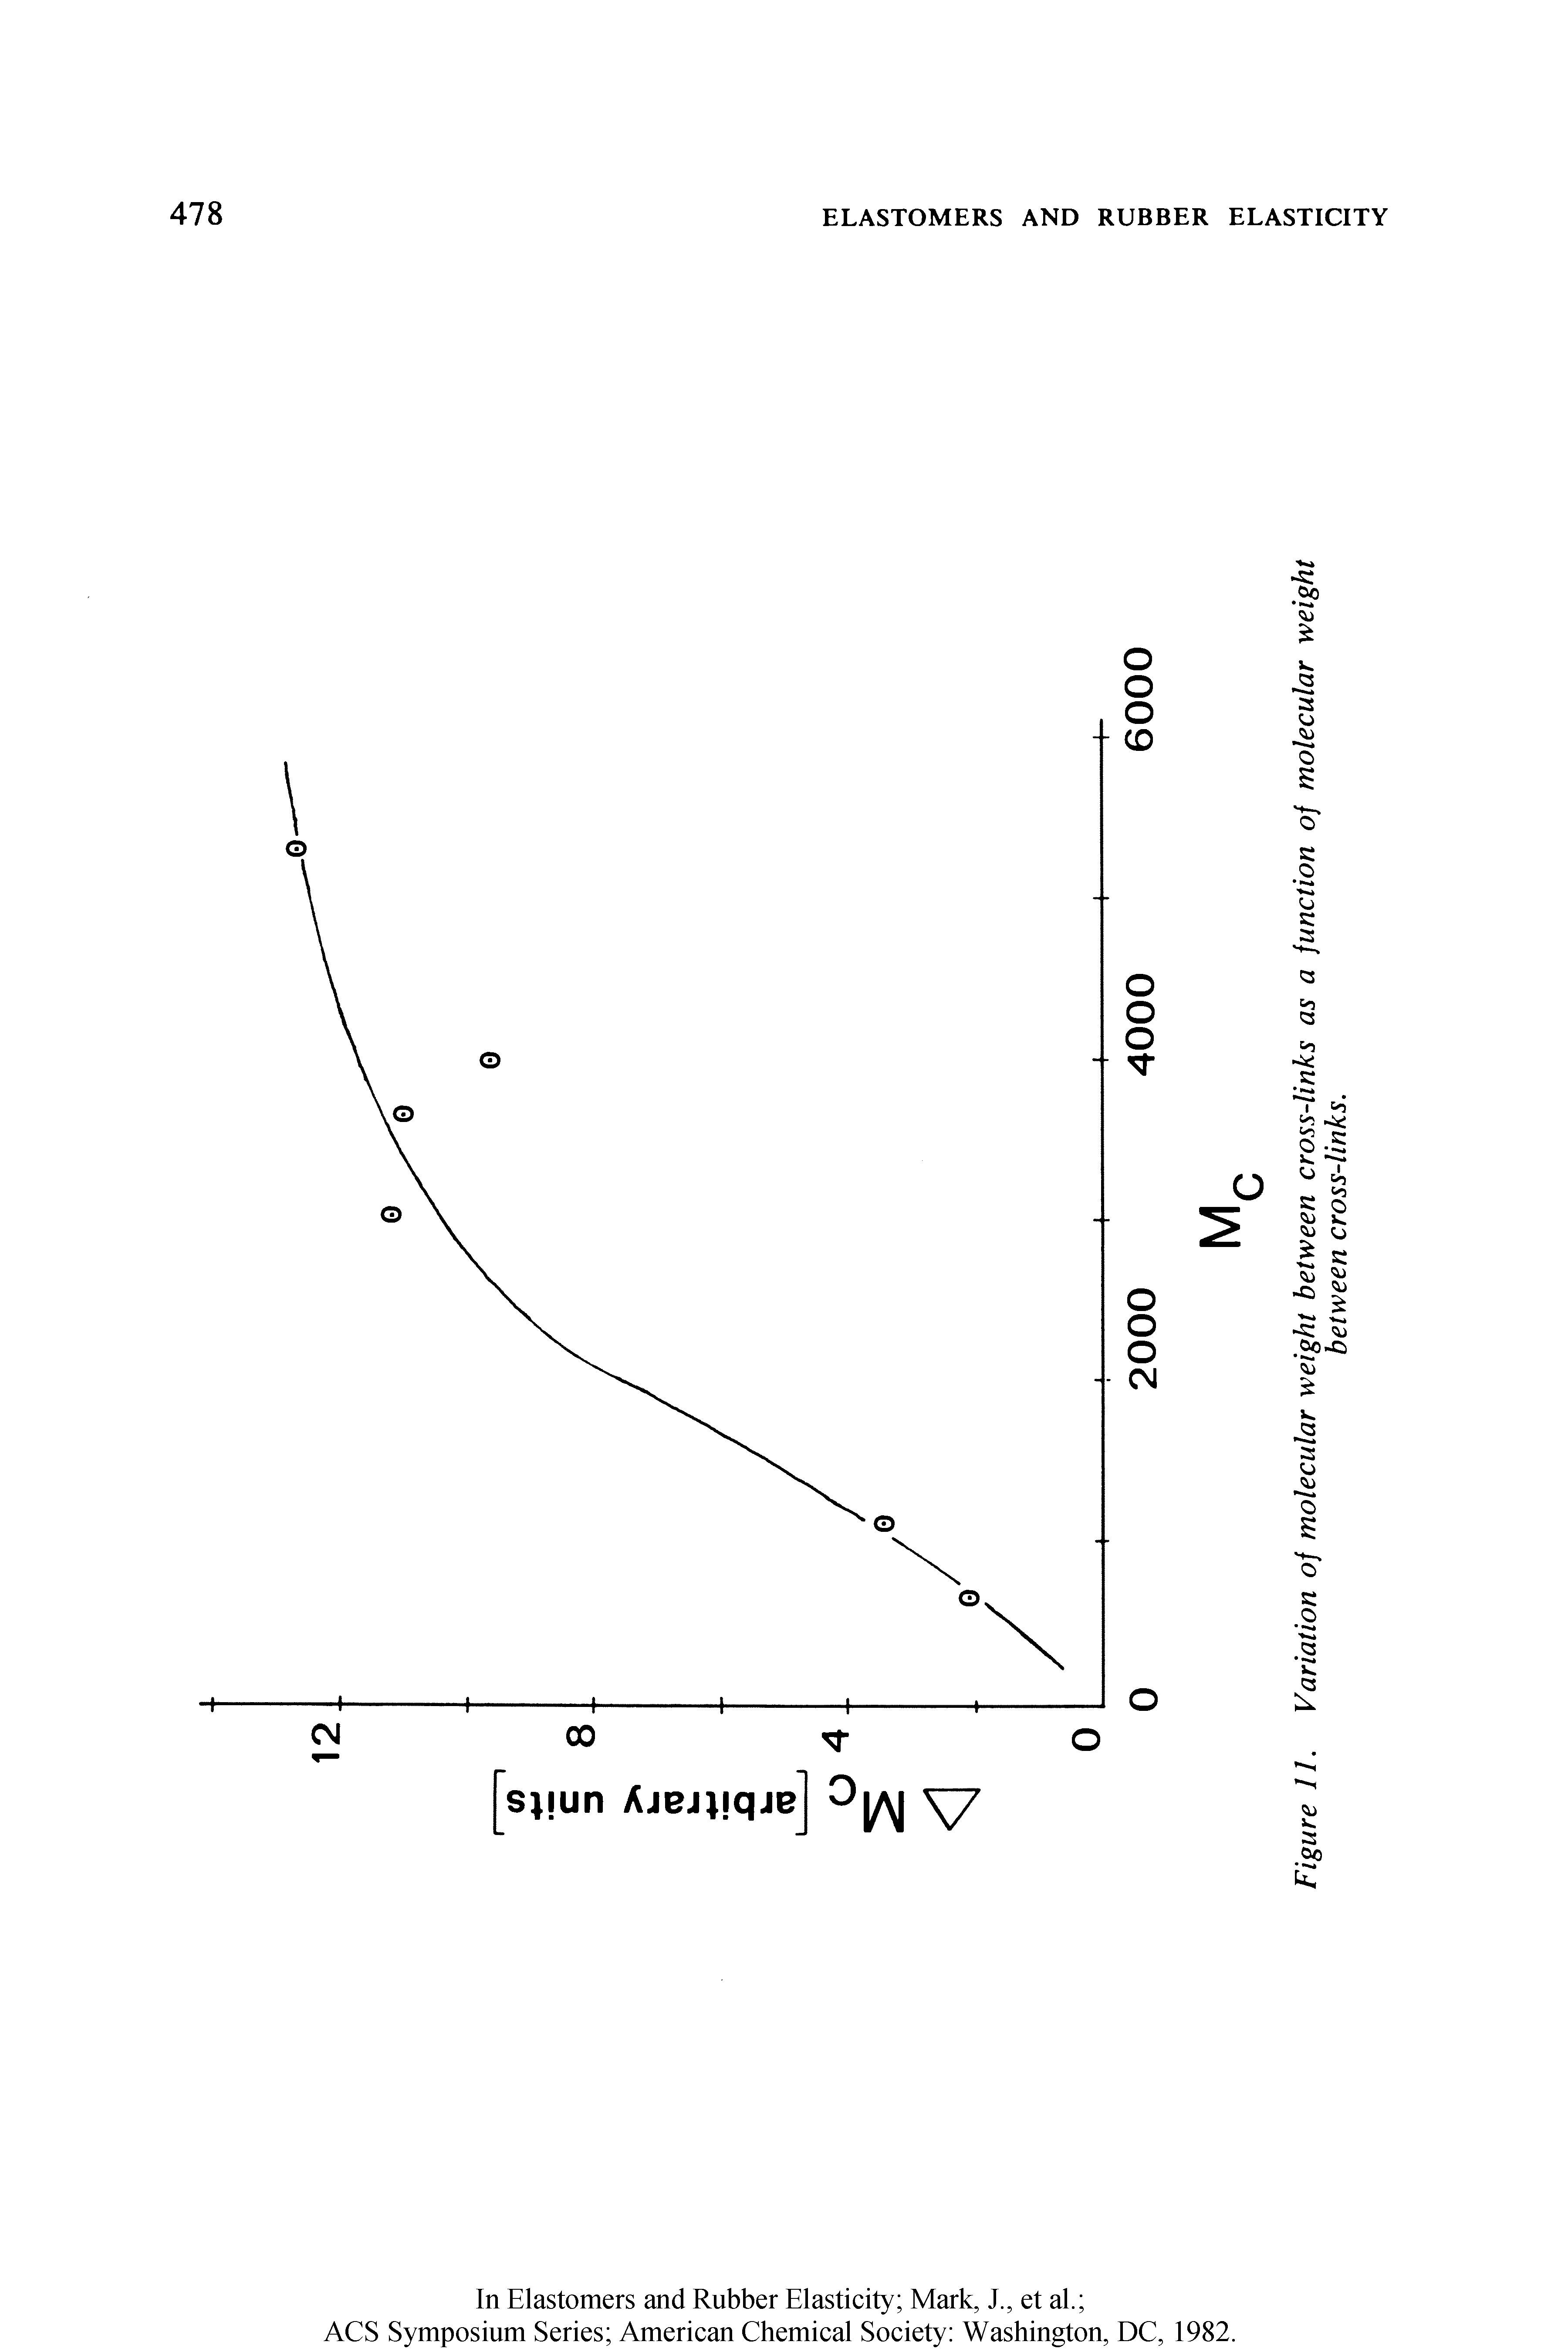 Figure 11. Variation of molecular weight between cross-links as a function of molecular weight...